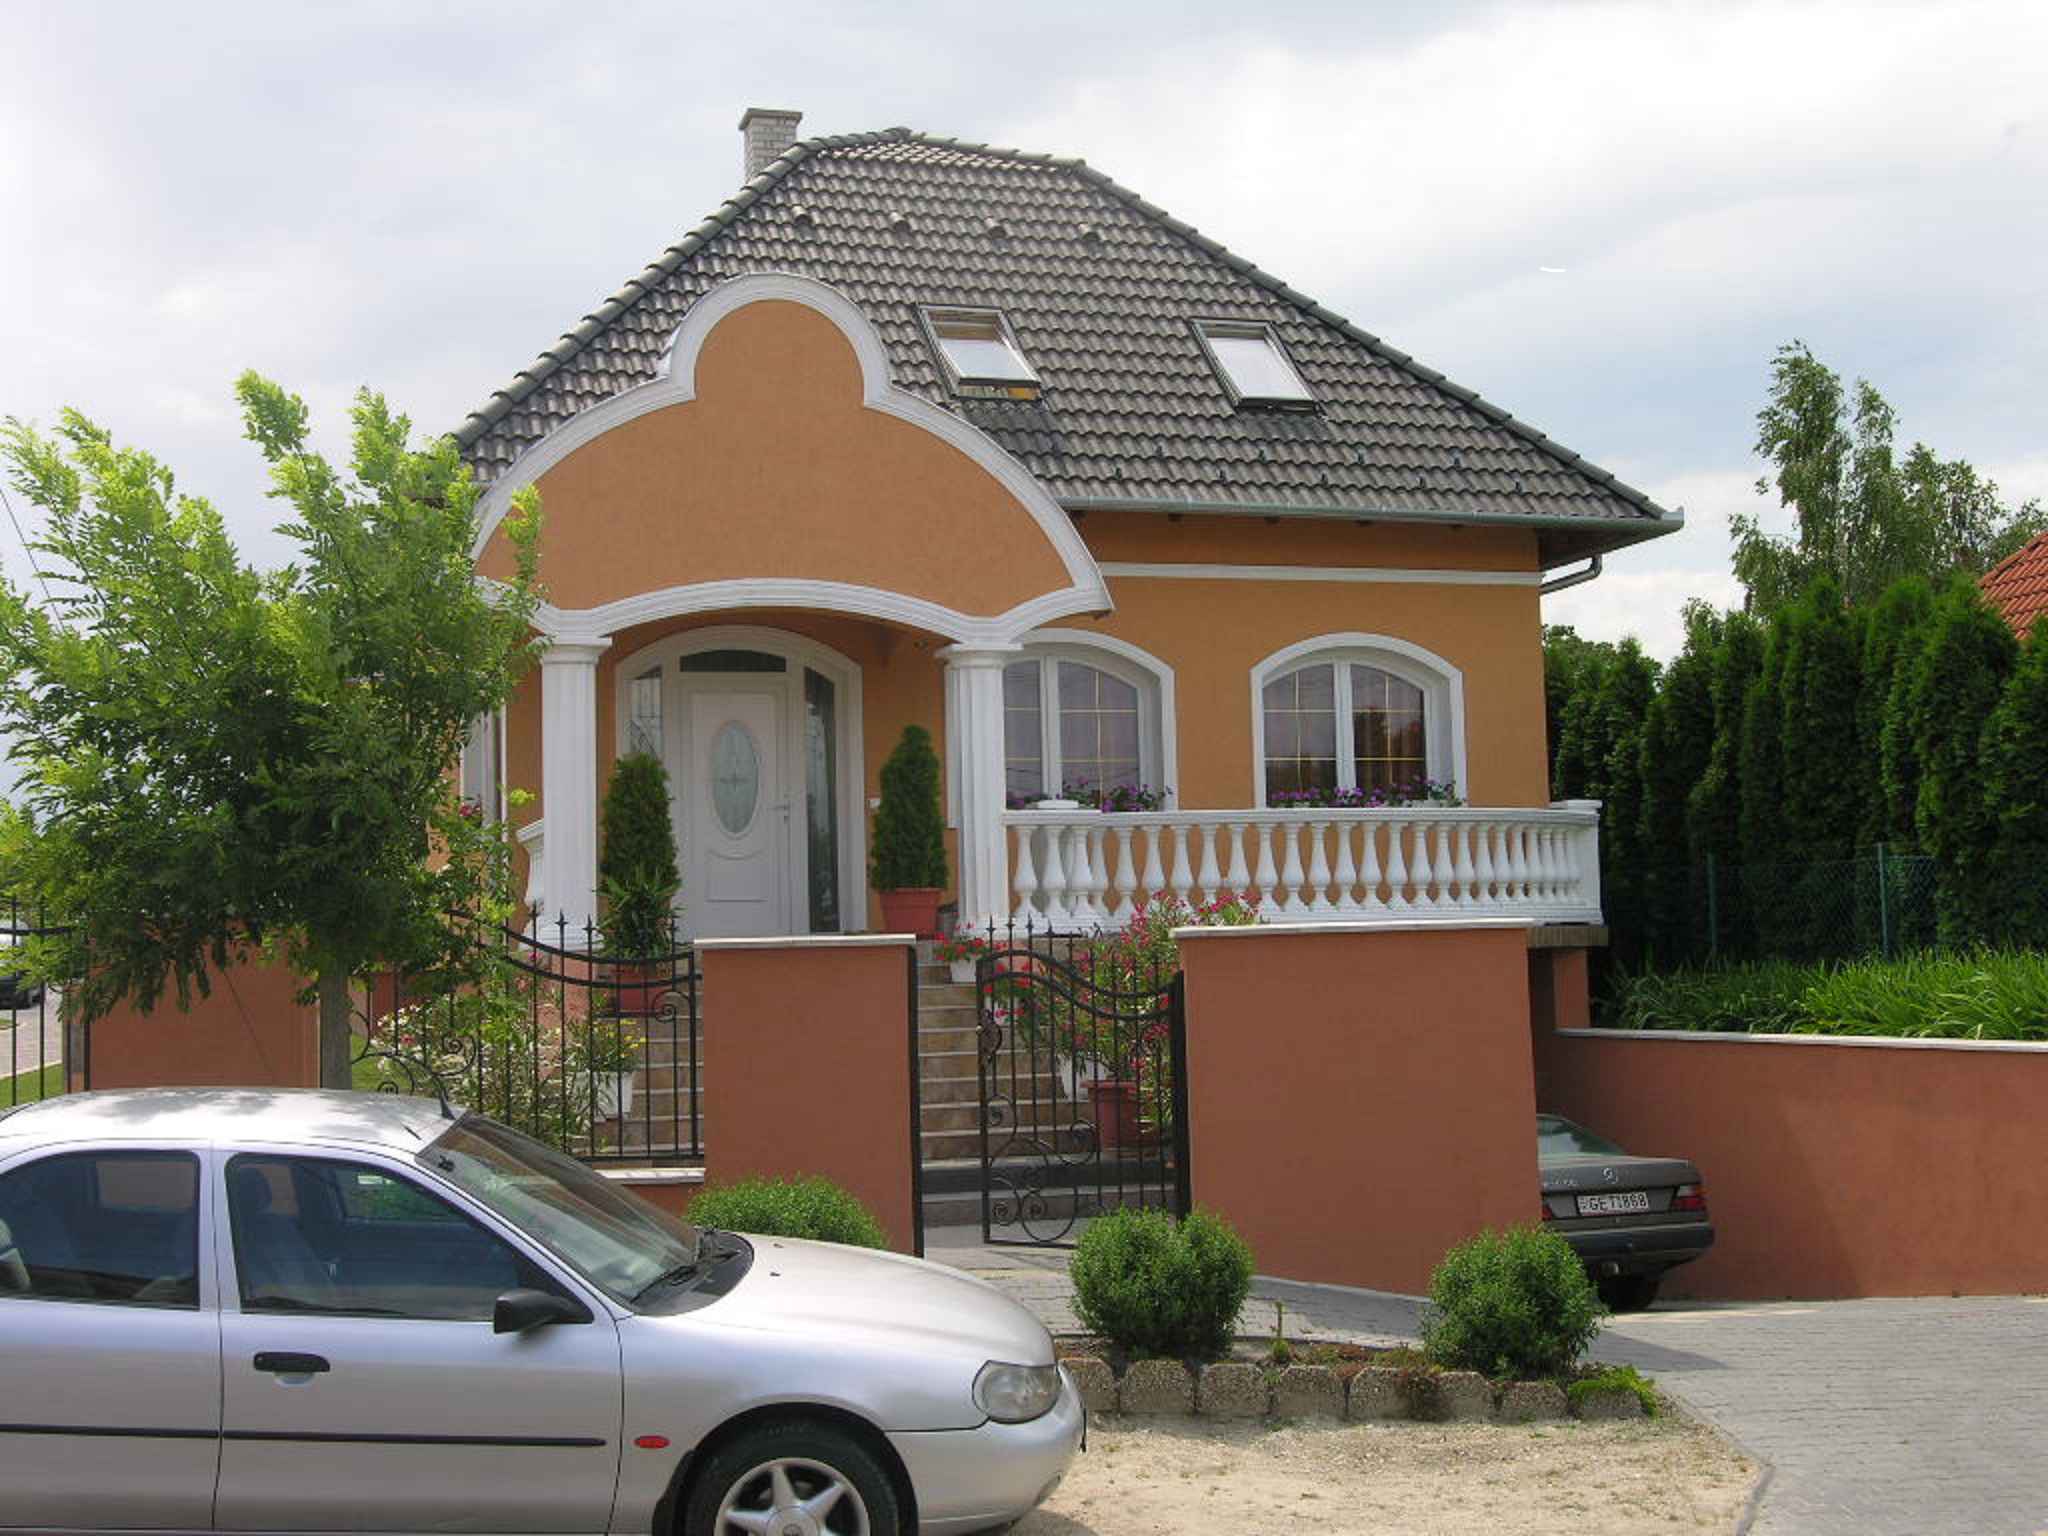 Ferienhaus mit luxuriösen Einrichtung Ferienhaus in Ungarn